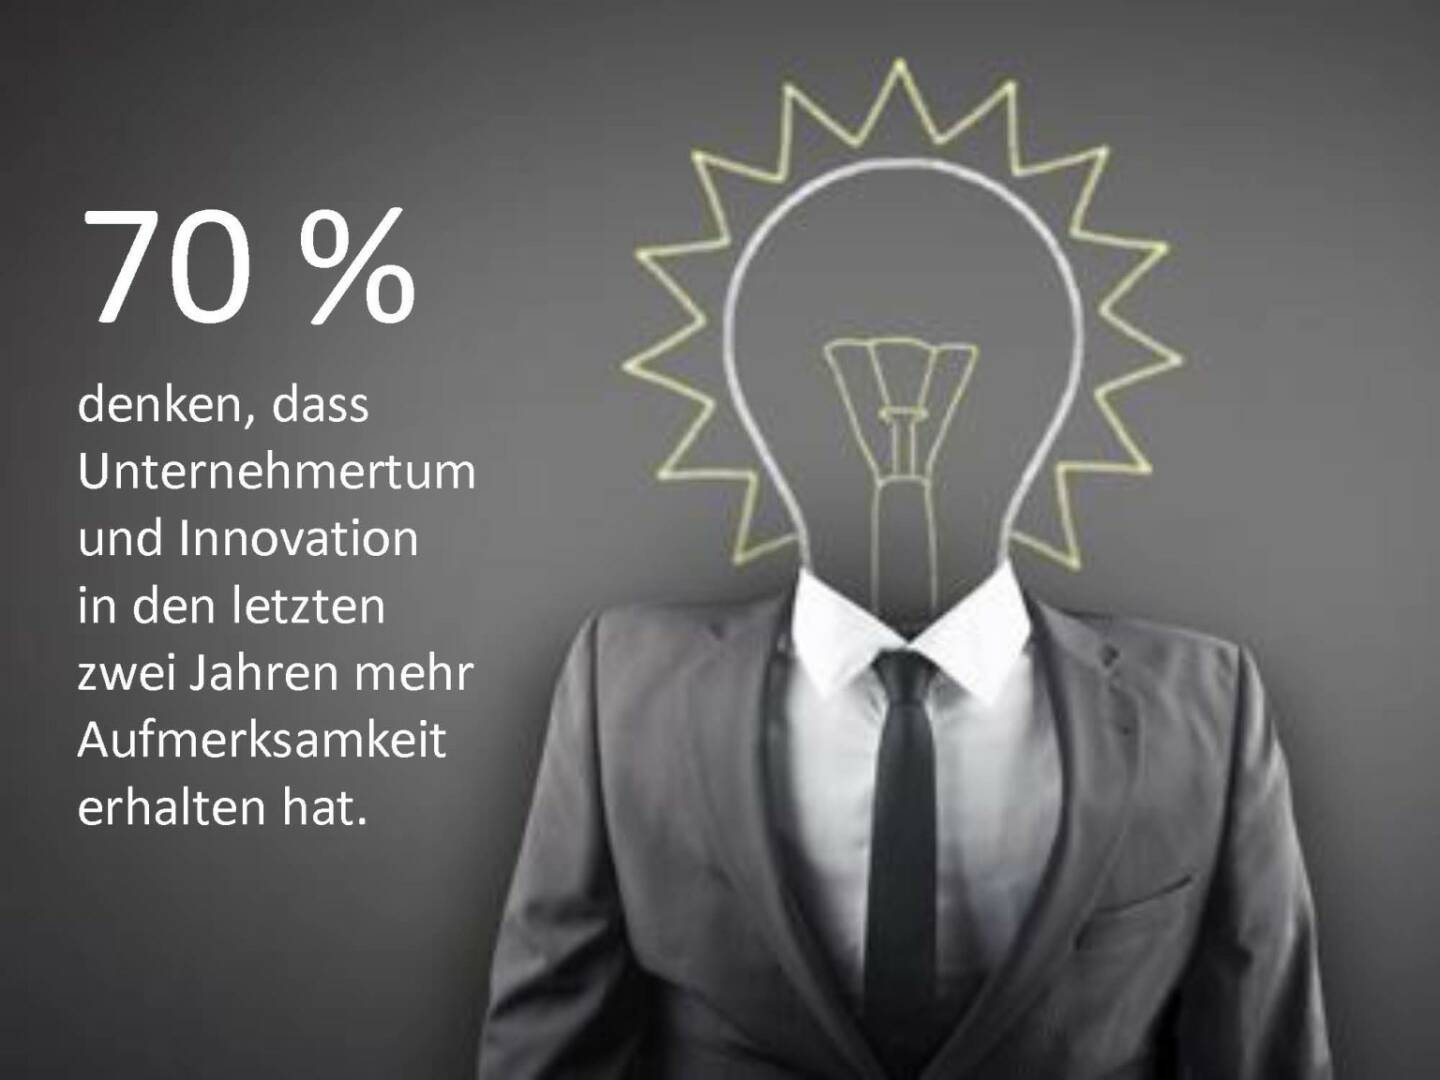 Austrian Startup Report 2013 - Unternehmertum